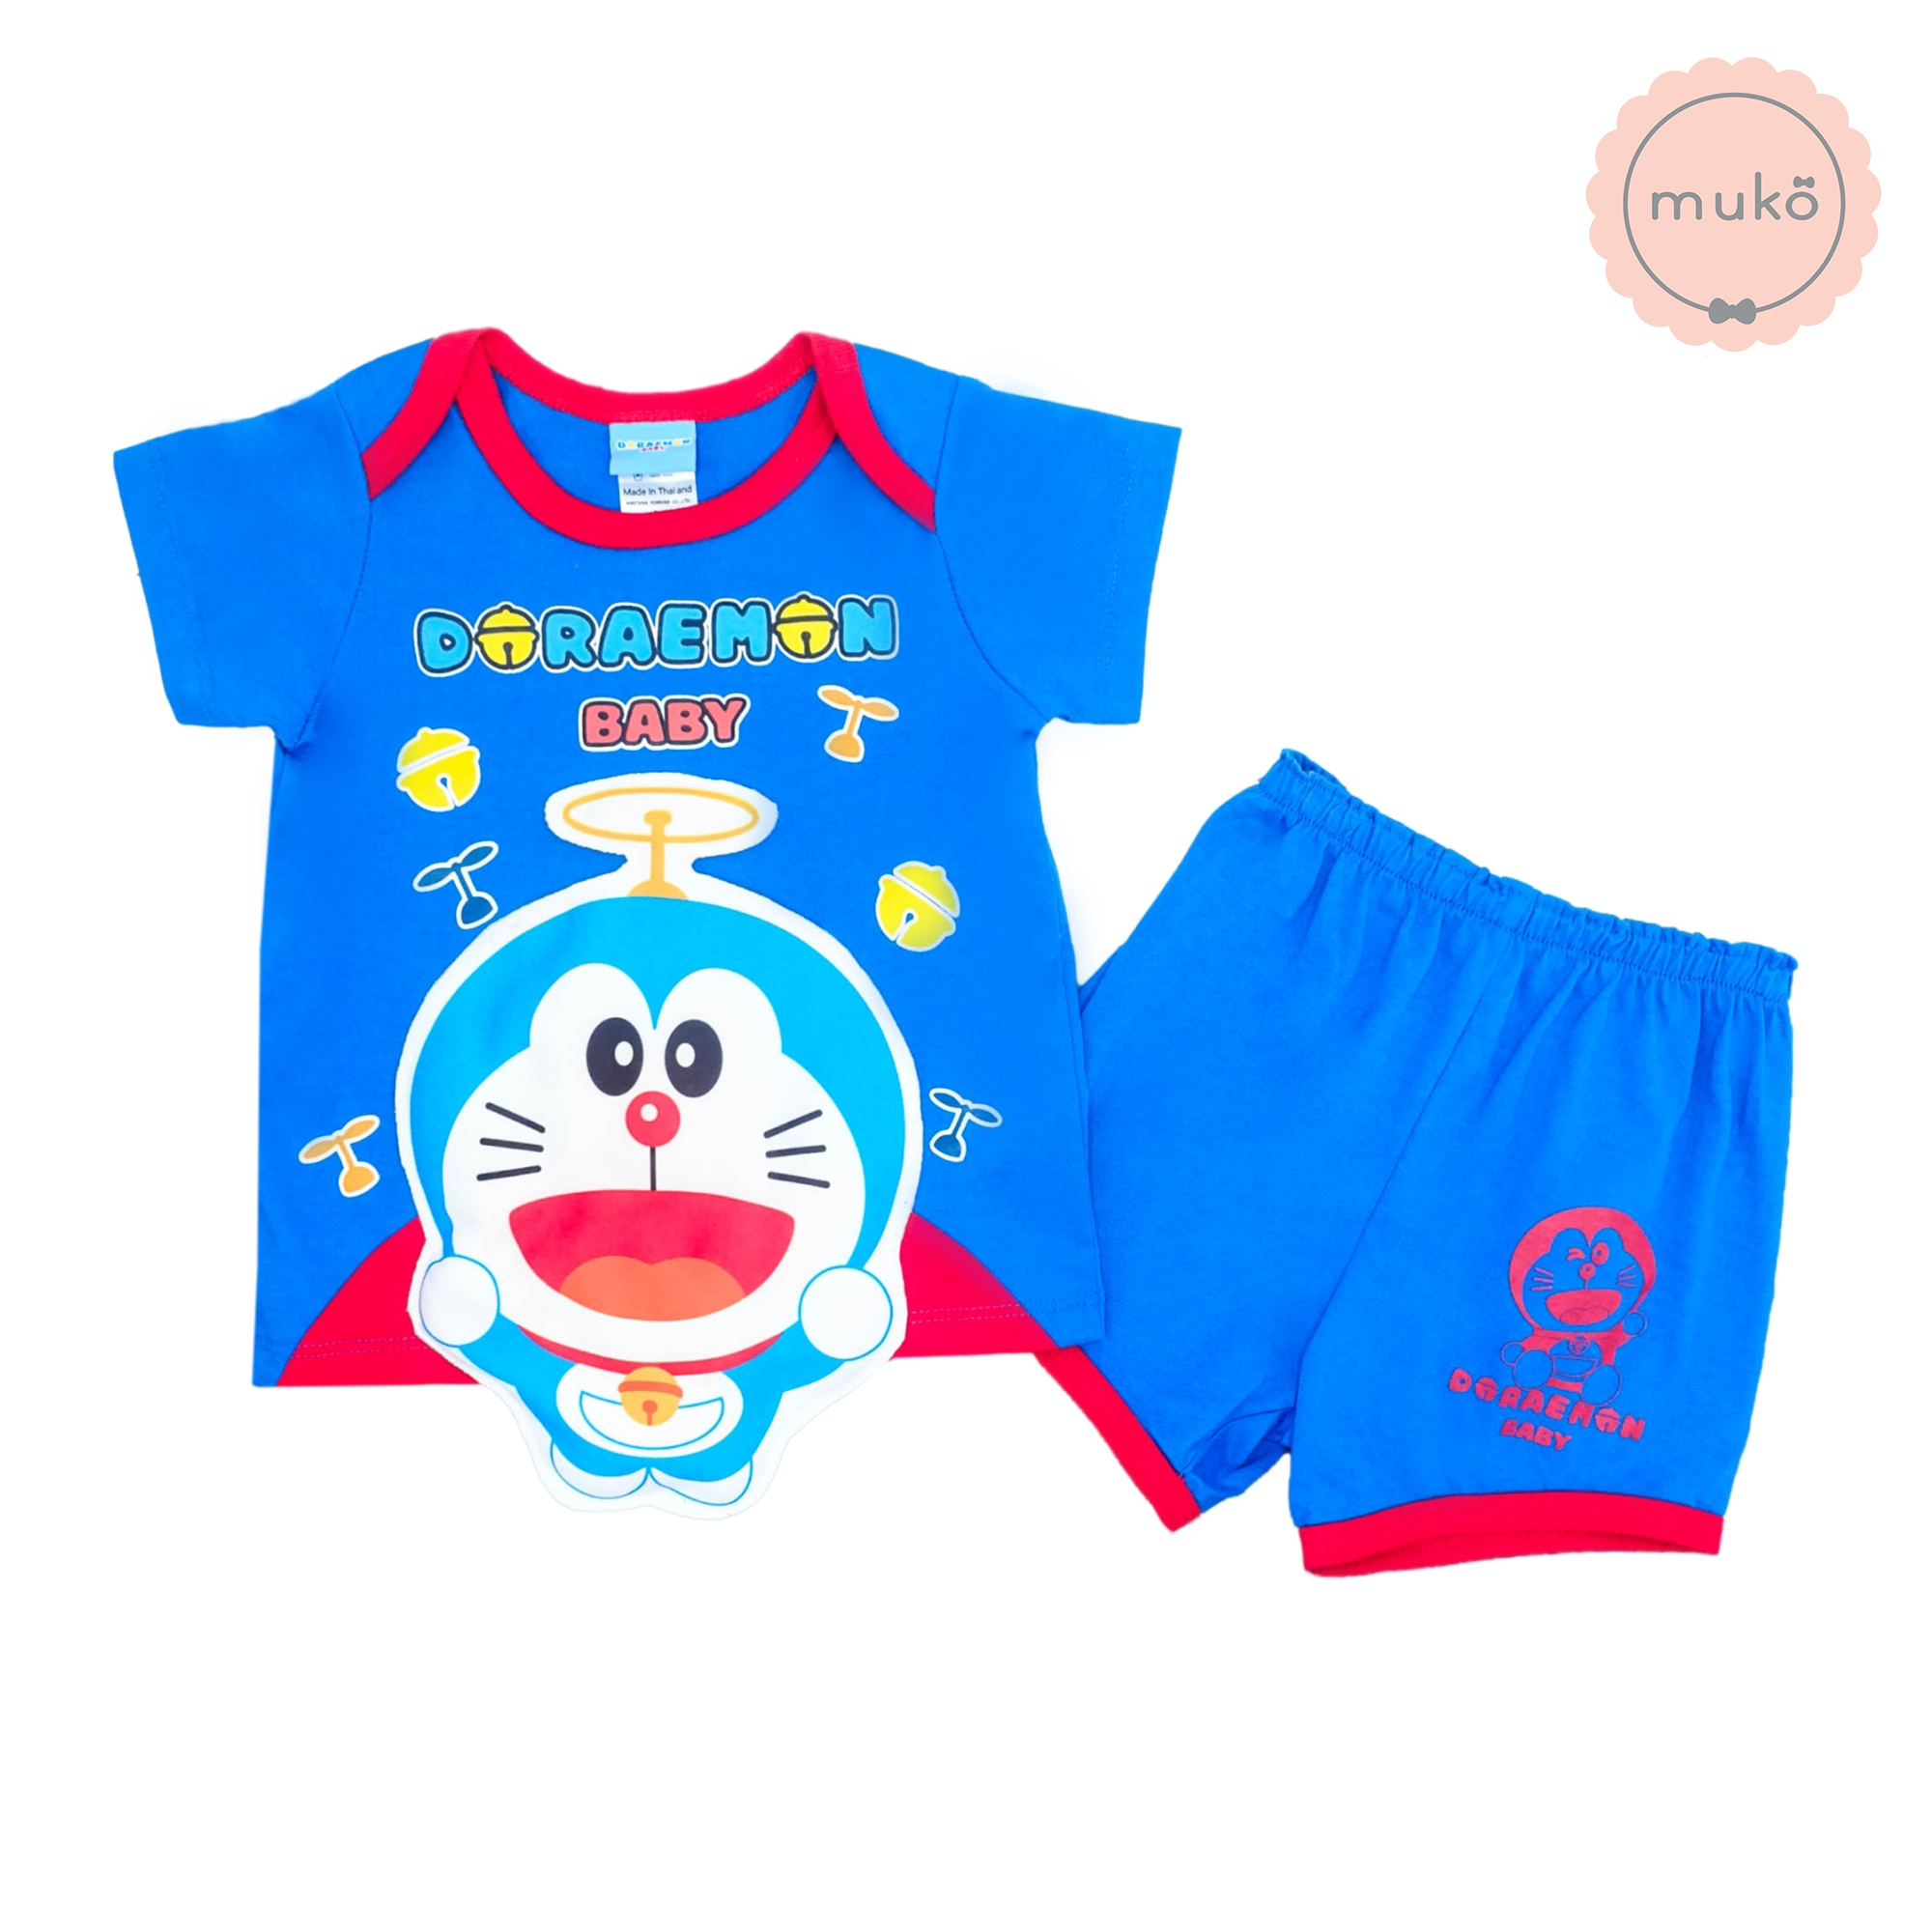 ชุดเบบี้ 3-6 เดือน แขนสั้น-ขาสั้น (S=70) ADC047-40-L-Midnight Blue S ลายโดเรม่อน Doraemon